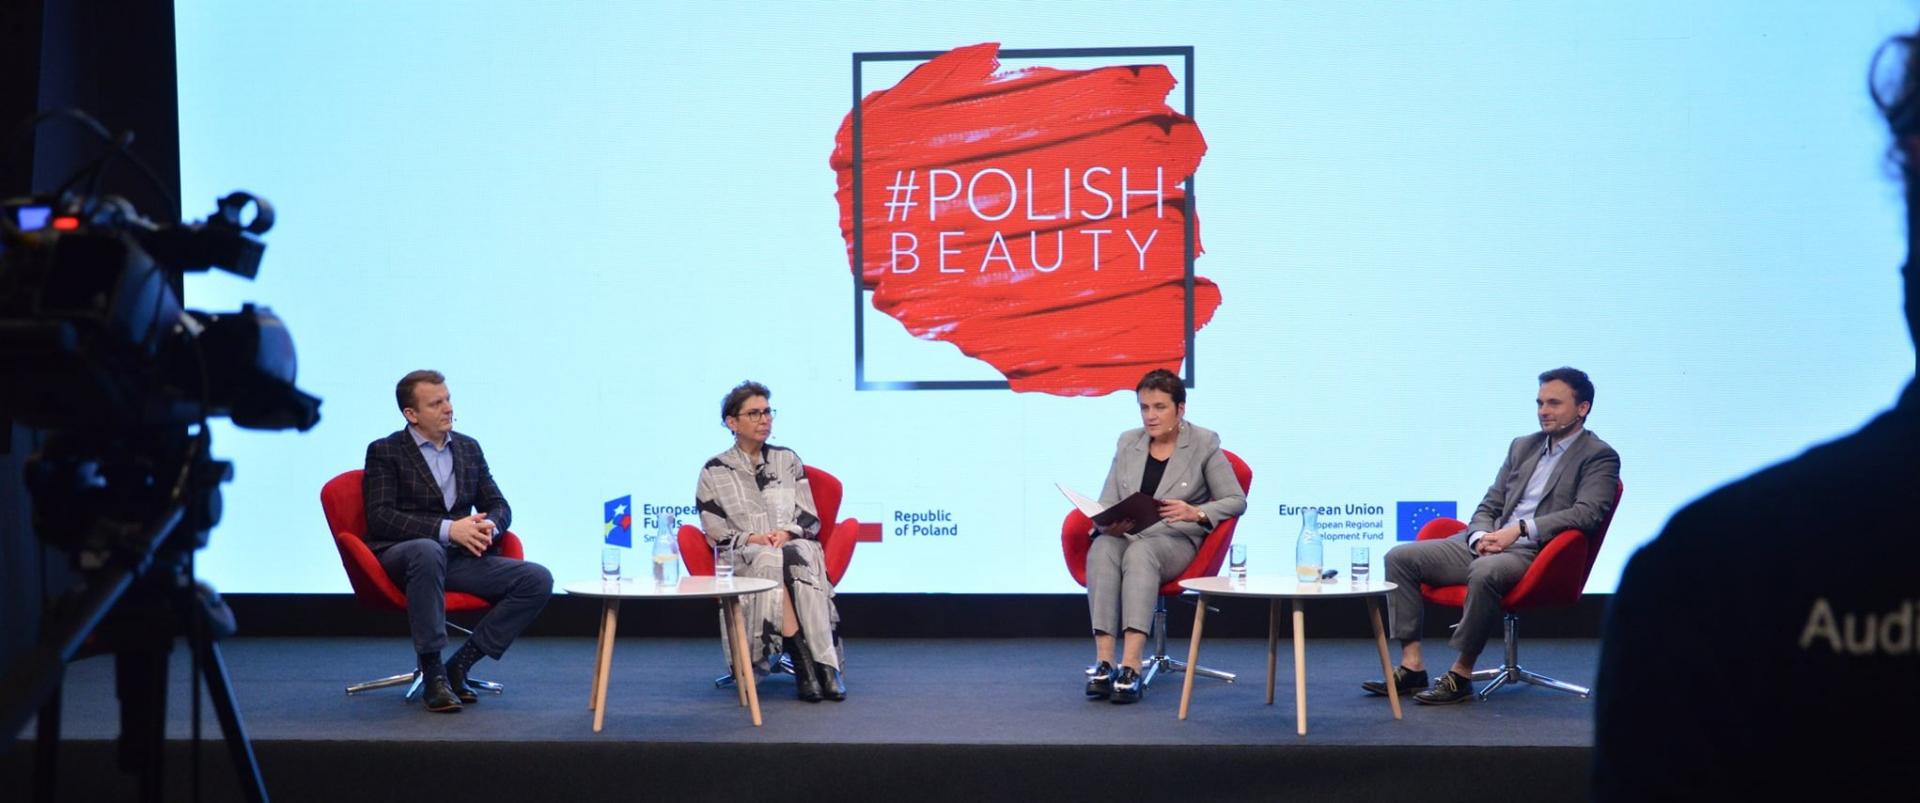 Cosmoprof Asia - Polish Beauty zameldowało się na tym wydarzeniu